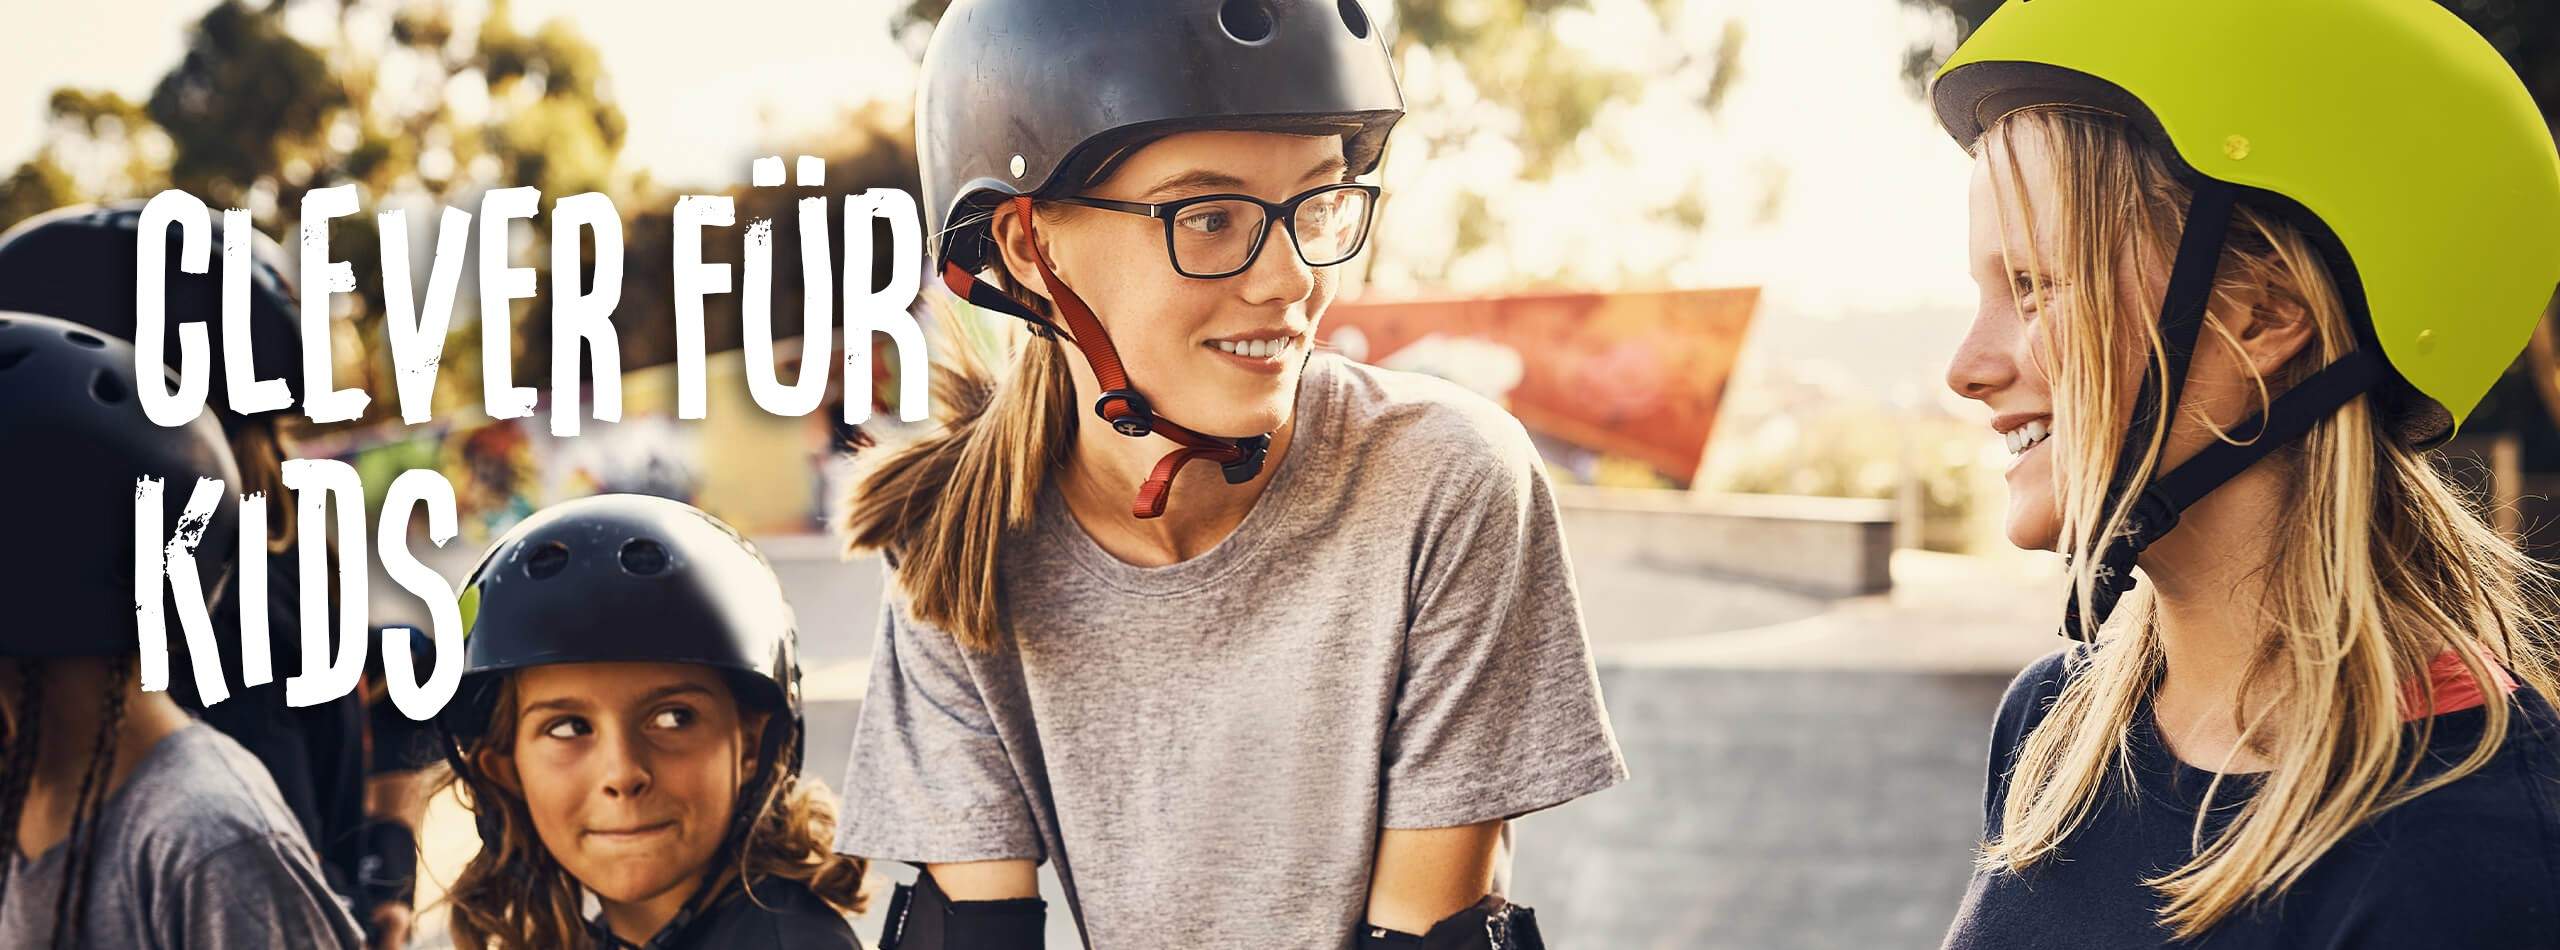 Mädchen mit Helm beim Skateboardfahren. Im Hintergrund steht der Slogan Clever für Kids.